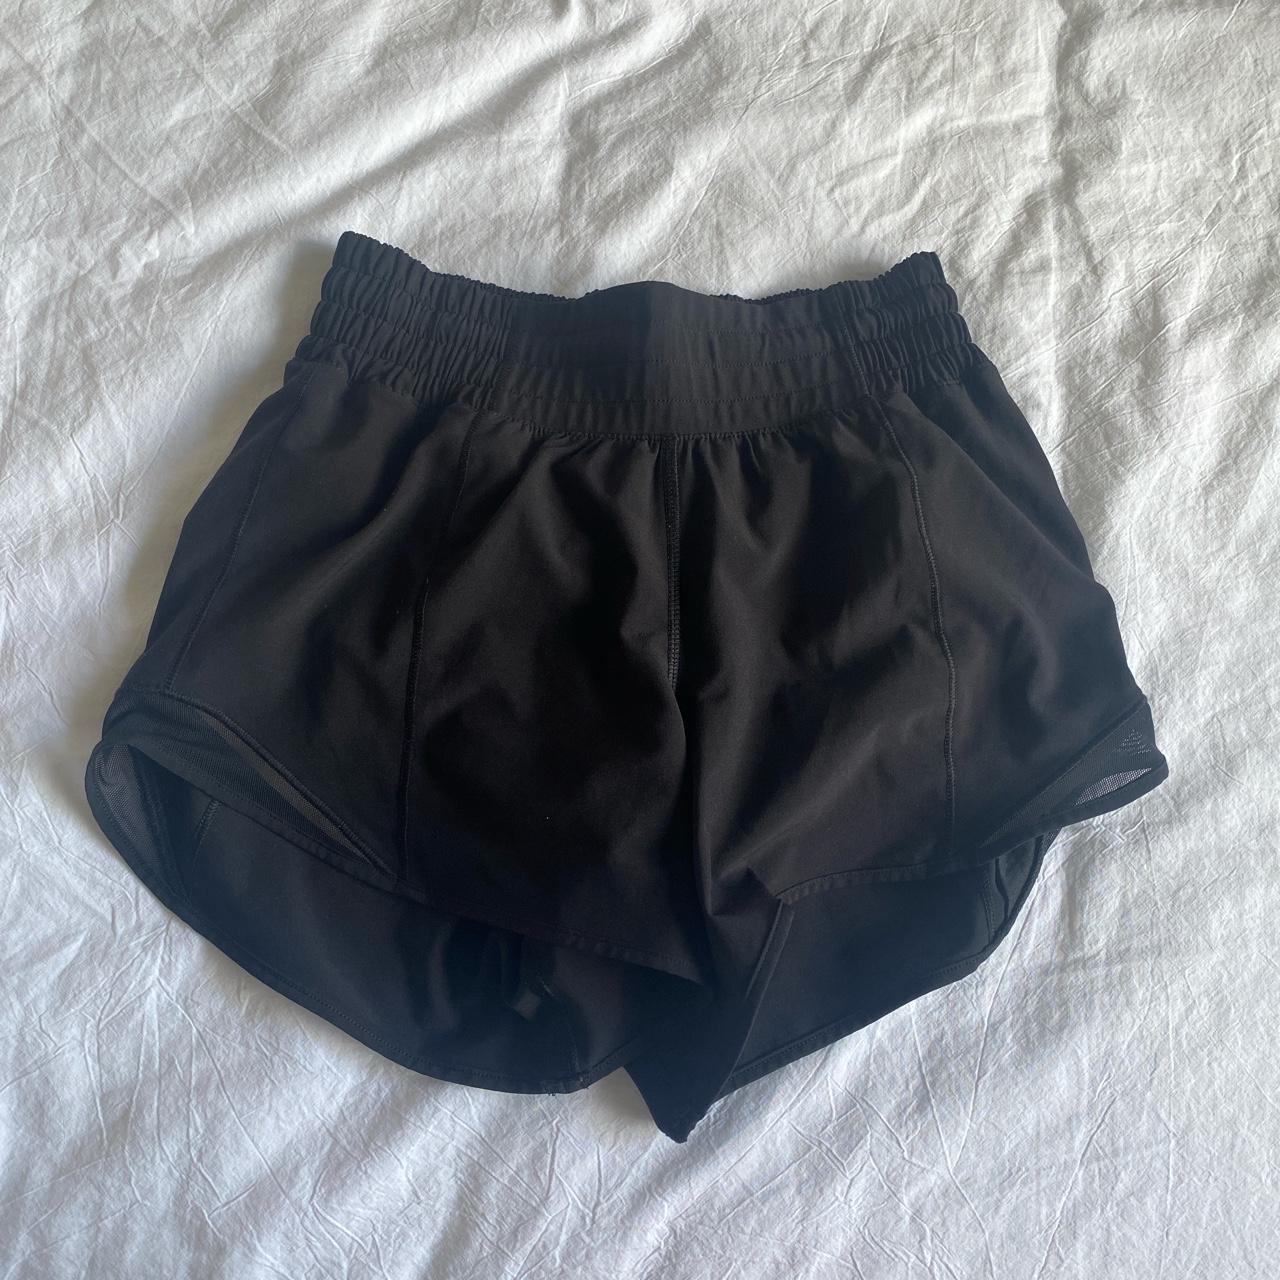 lululemon hotty hot shorts high rise 4” worn a few... - Depop